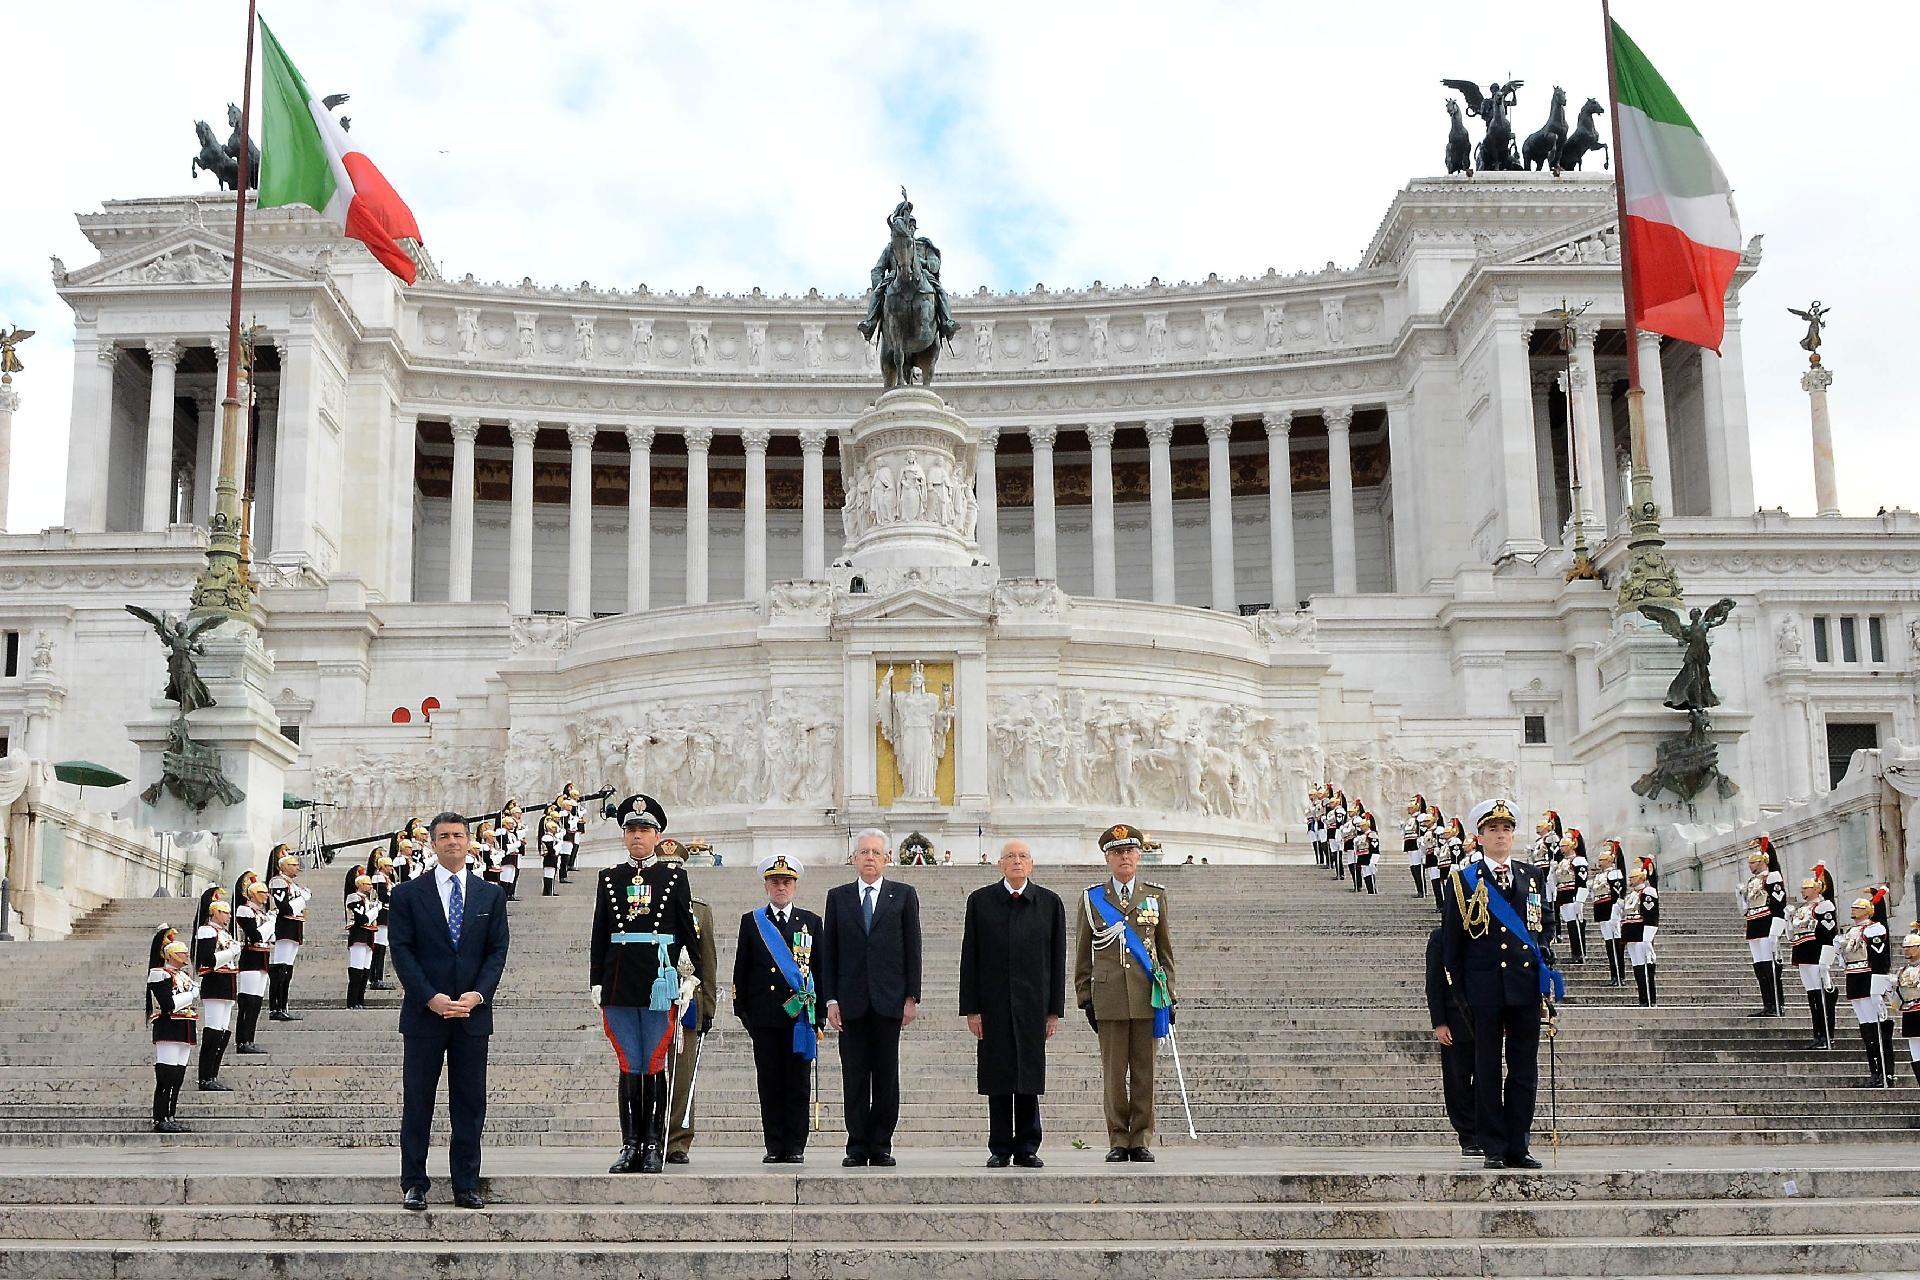 Il Presidente Giorgio Napolitano durante l'Inno Nazionale in occasione della deposizione di una corona d'alloro sulla tomba del Milite Ignoto all'Altare della Patria